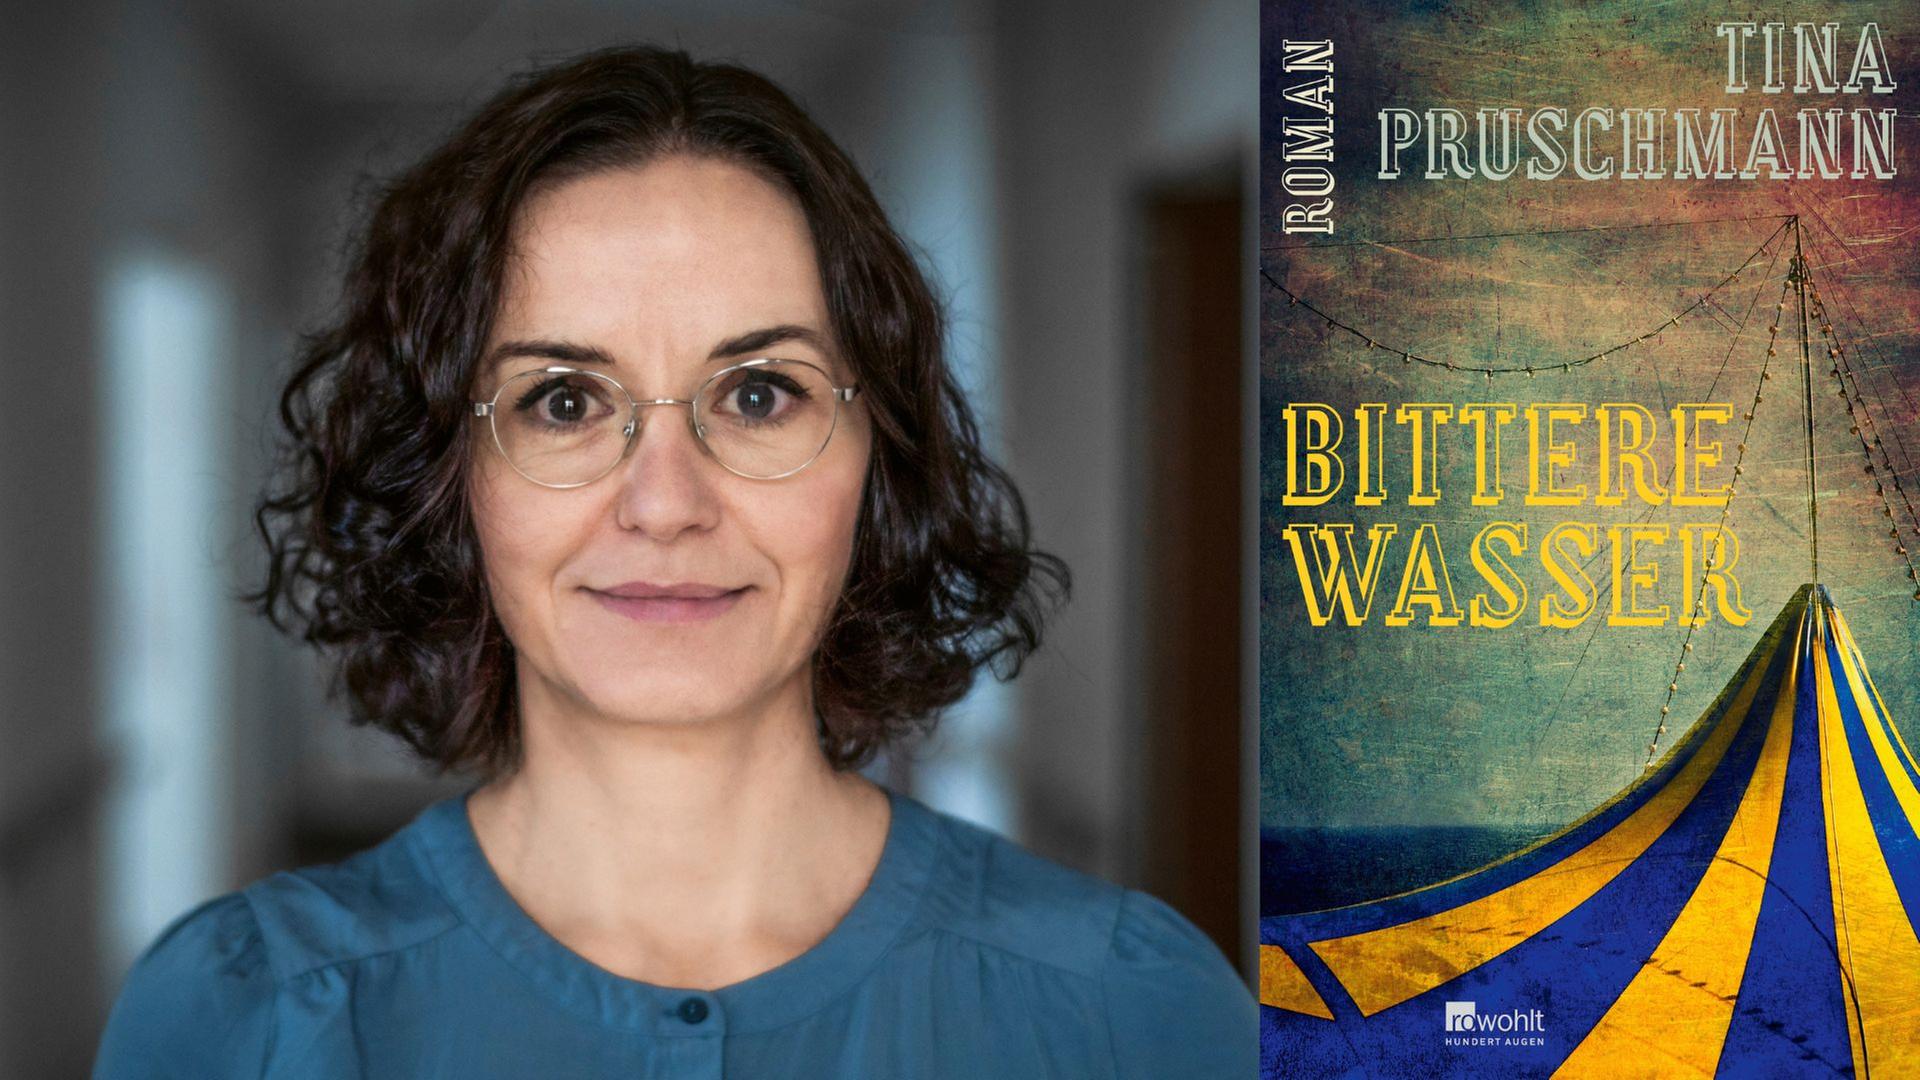 Tina Pruschmann: "Bittere Wasser"
Zu sehen sind die Autorin und das Buchcover